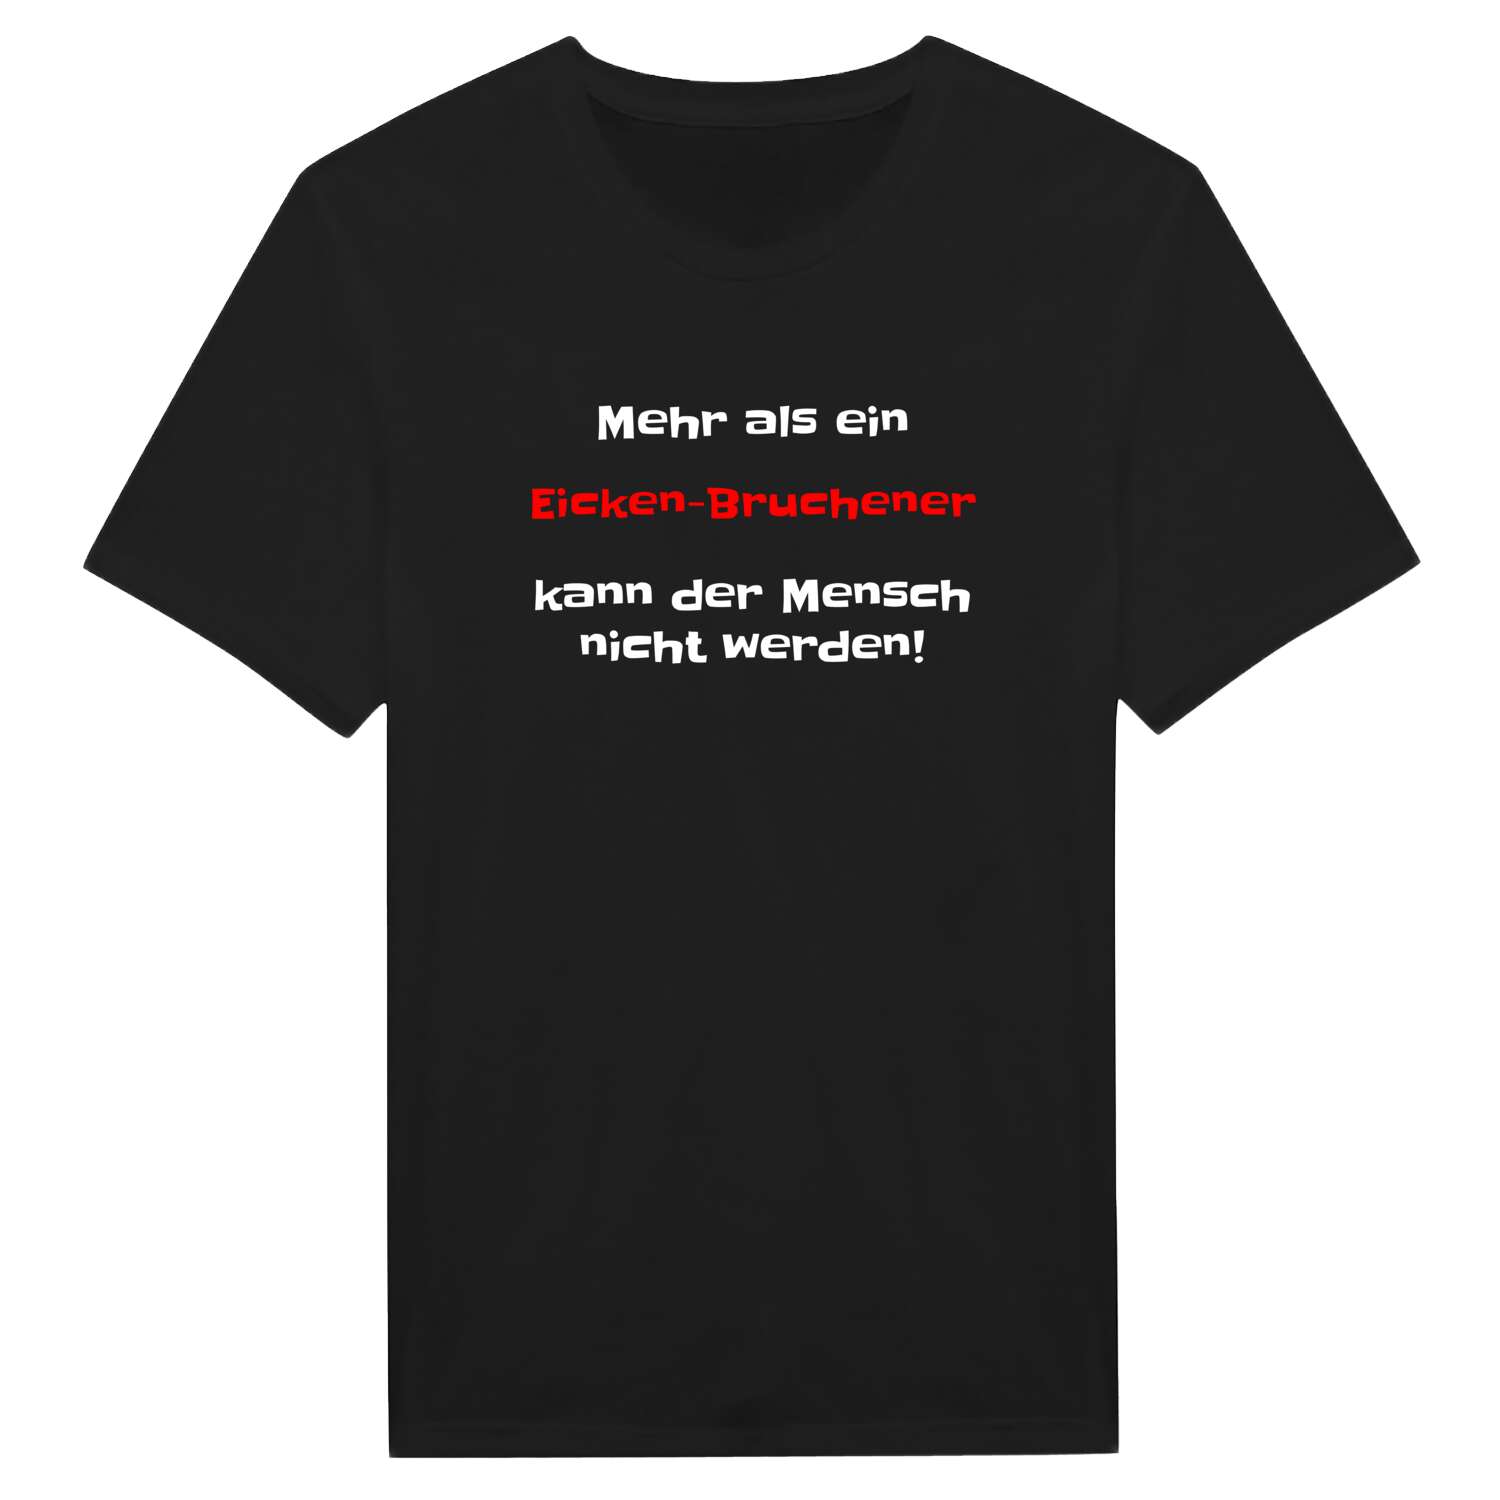 Eicken-Bruche T-Shirt »Mehr als ein«